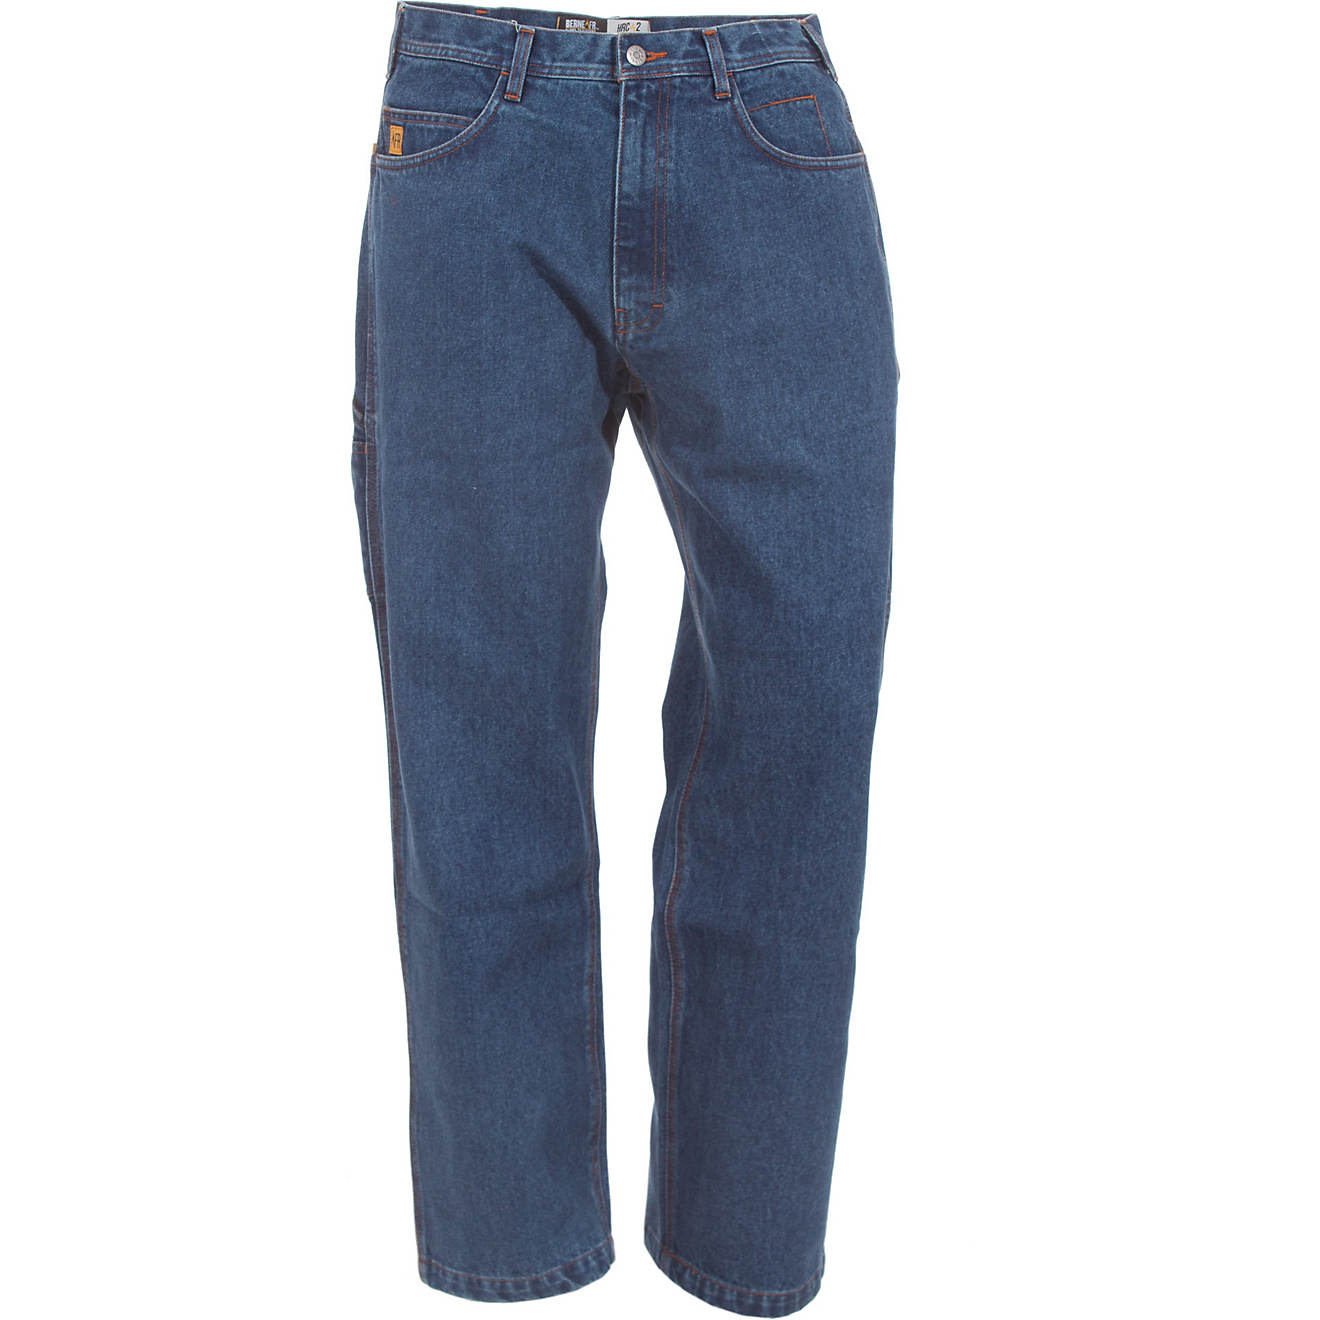 Berne FR Carpenter Jeans                                                                                                         - view number 1